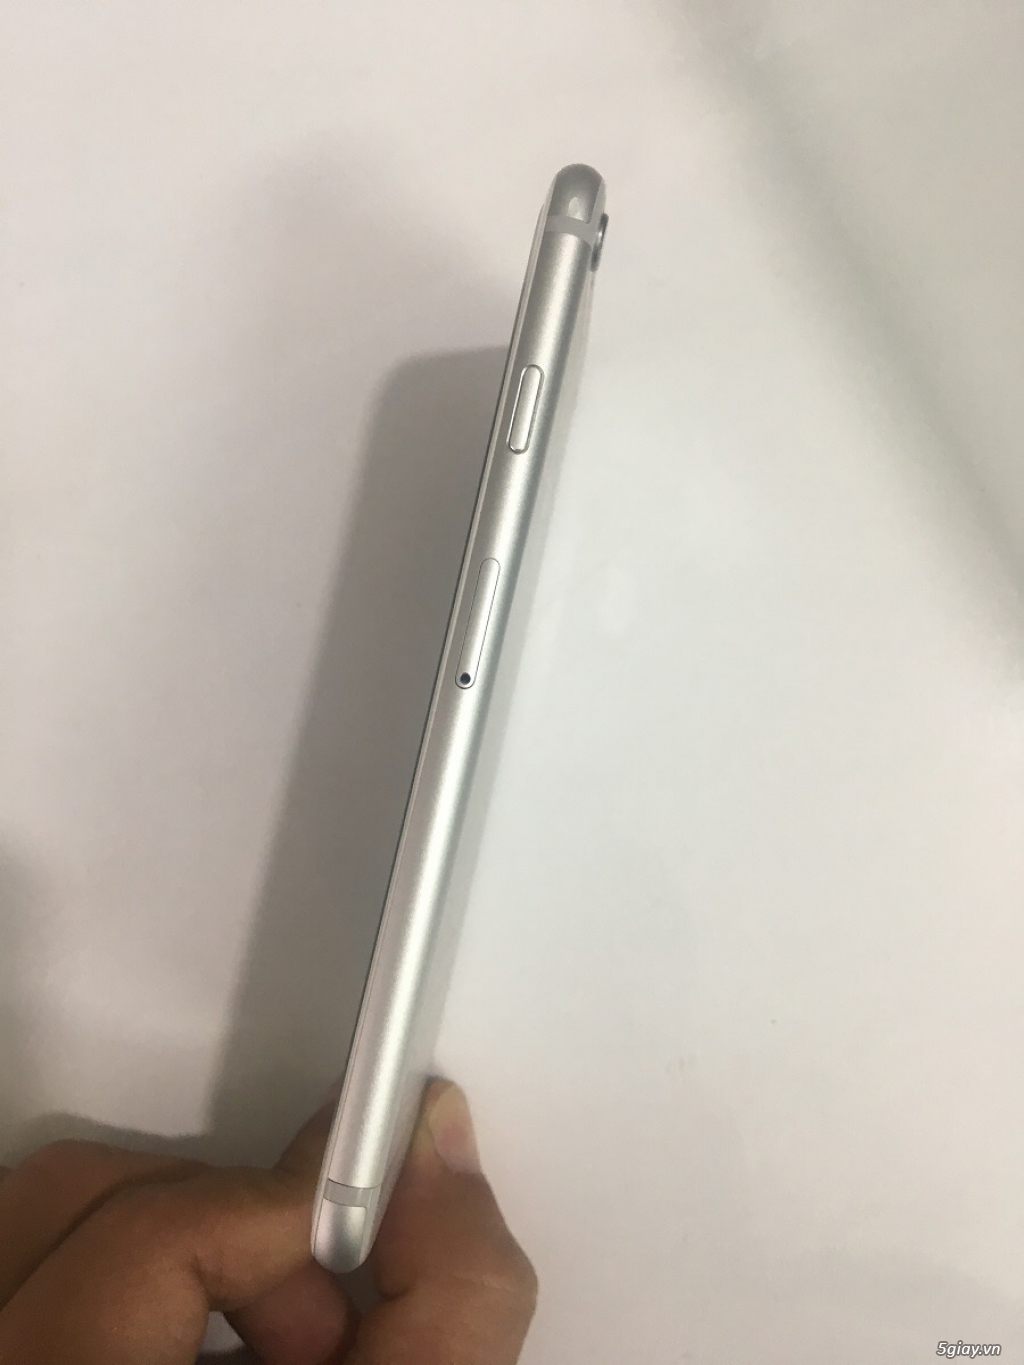 Iphone 6 màu bạc 16Gb zin chưa bung, rất đẹp - 3